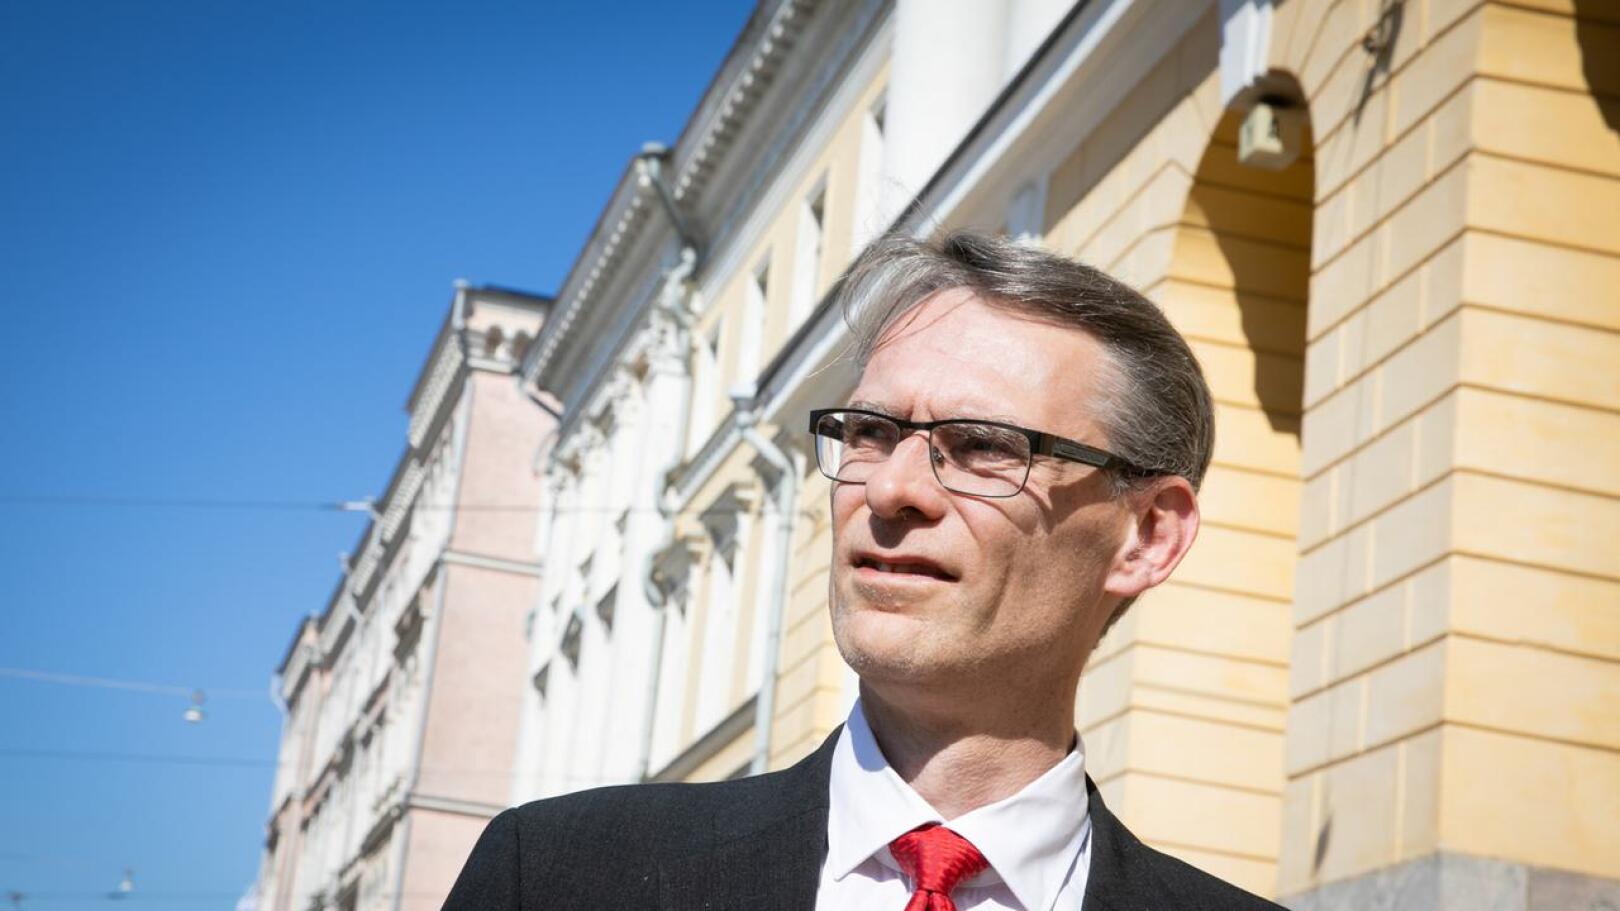 Oikeuskansleri Tuomas Pöysti selvitti ministeriöiden ja menettelyä suojainvarusteiden hankinnassa.